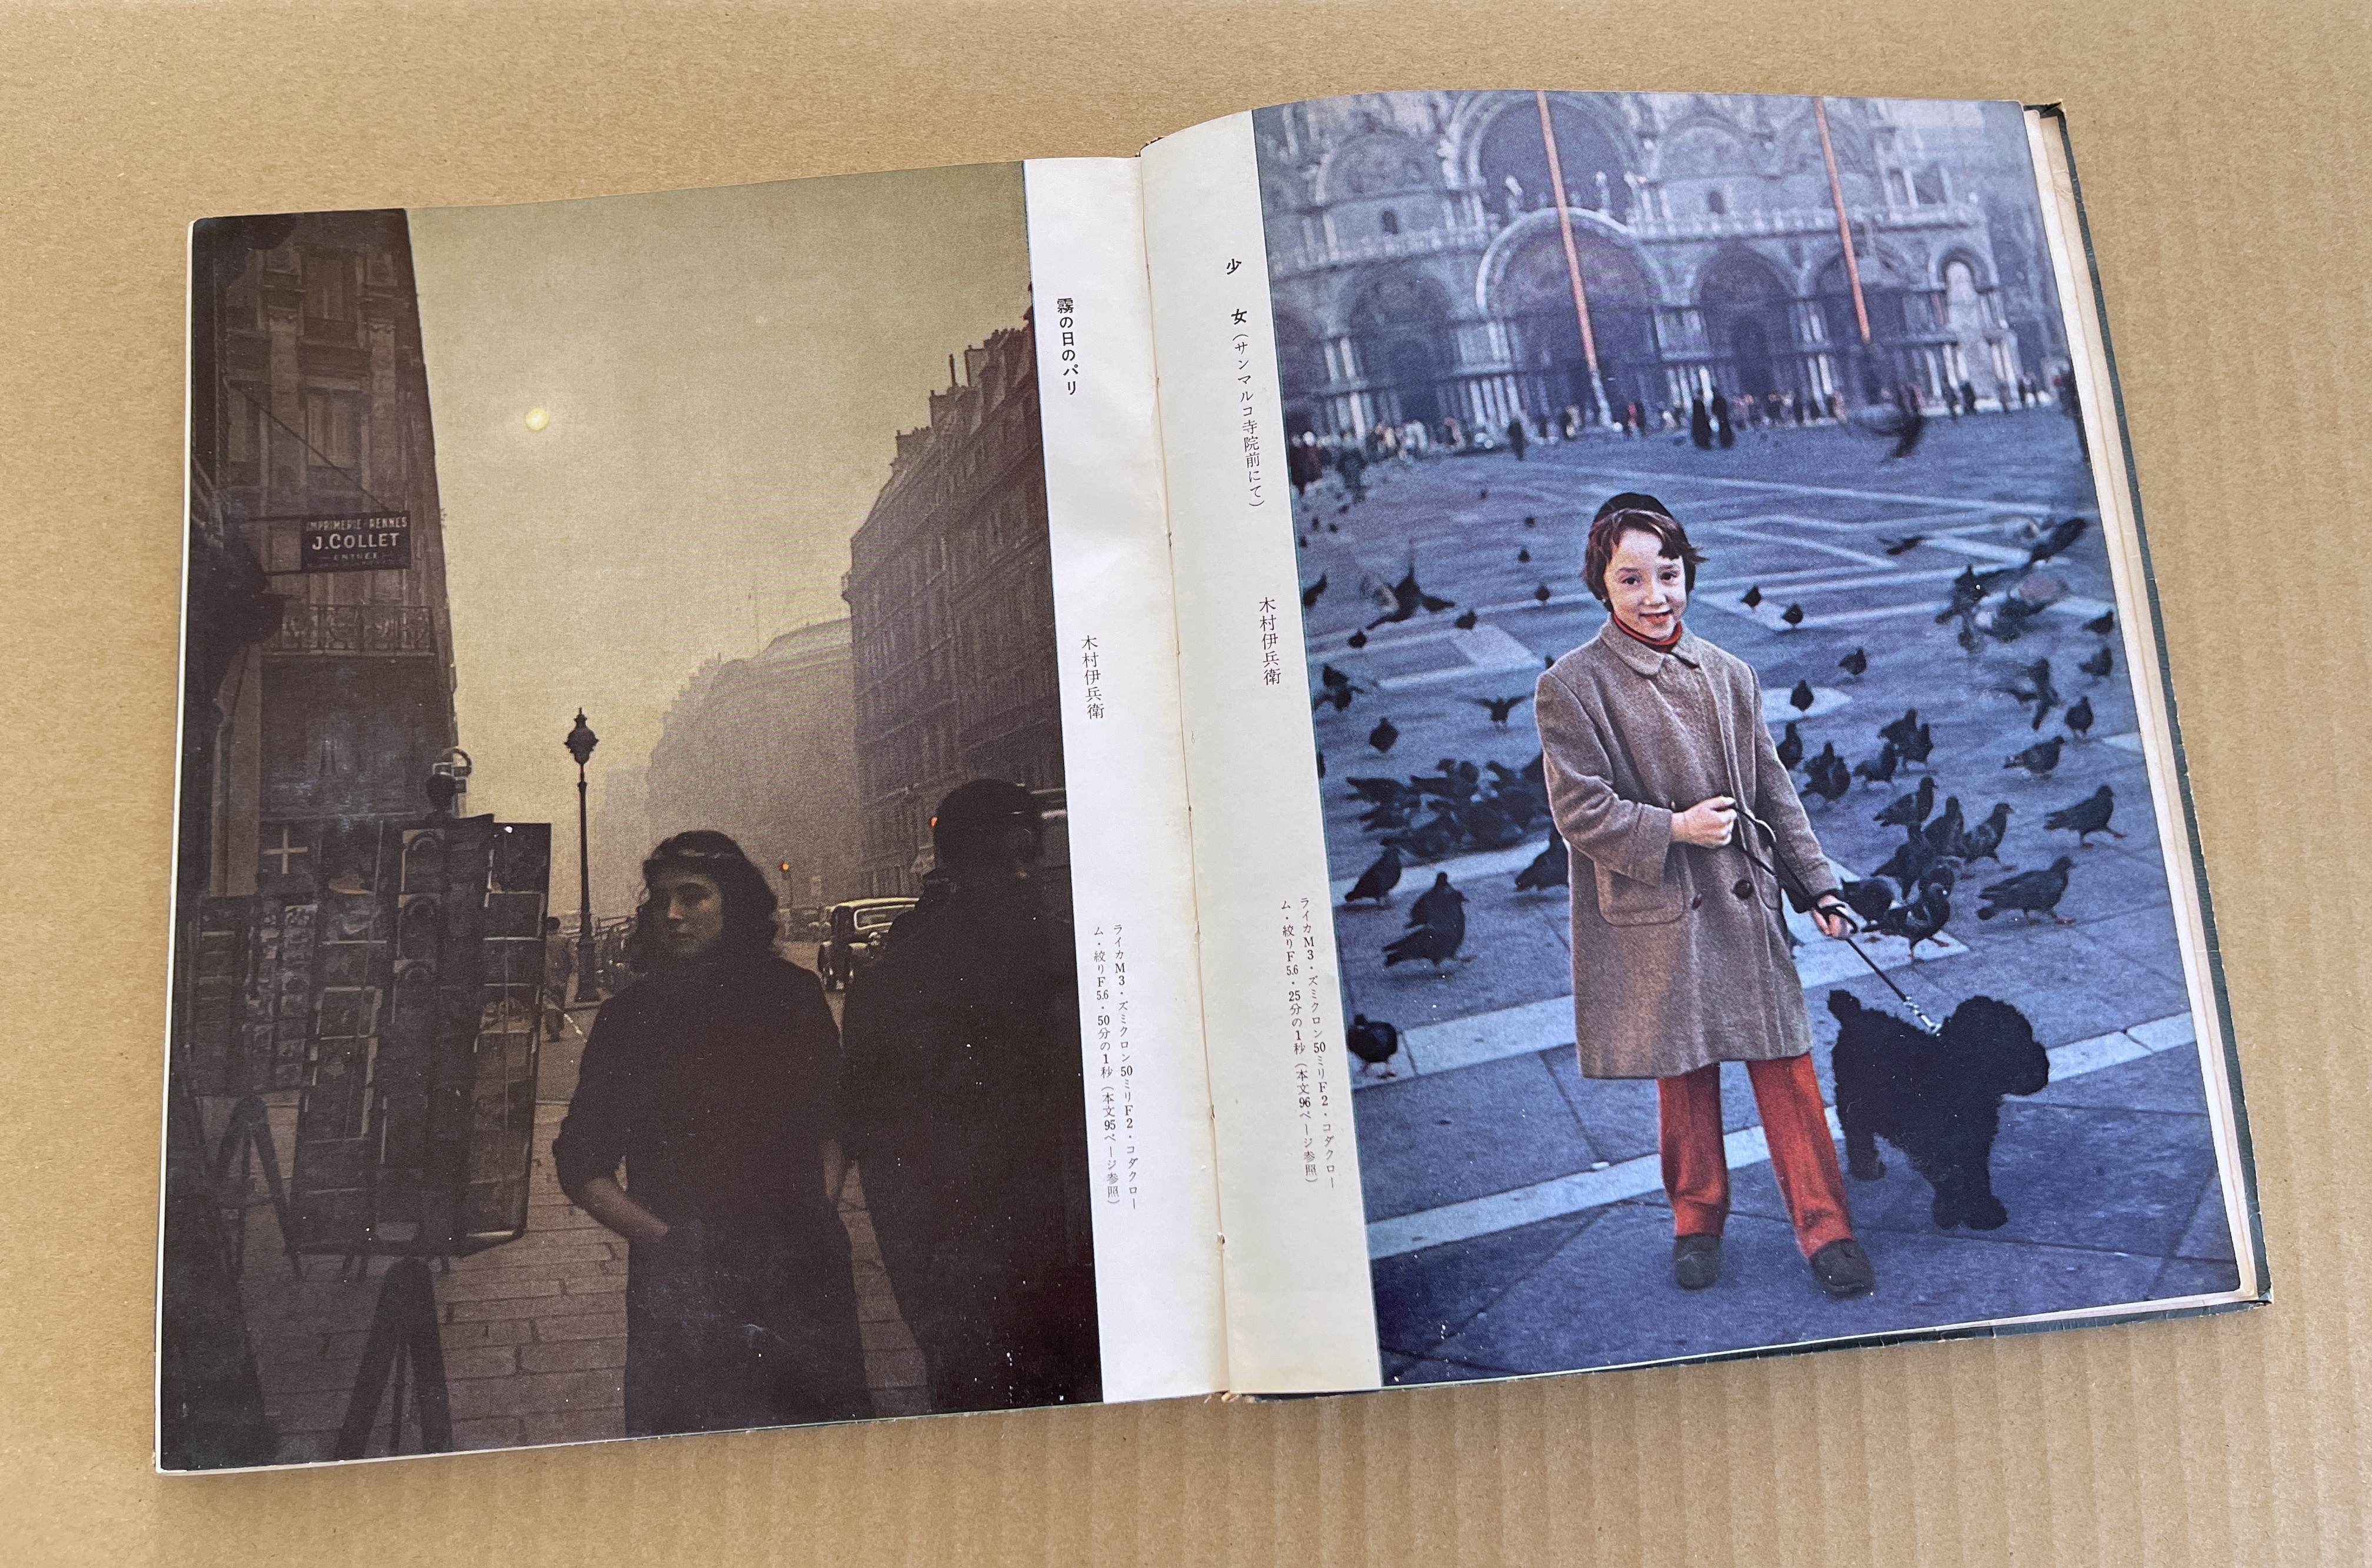 上野修：2 『アサヒカメラ教室』第4巻「カラー写真」（1959年）：Photo